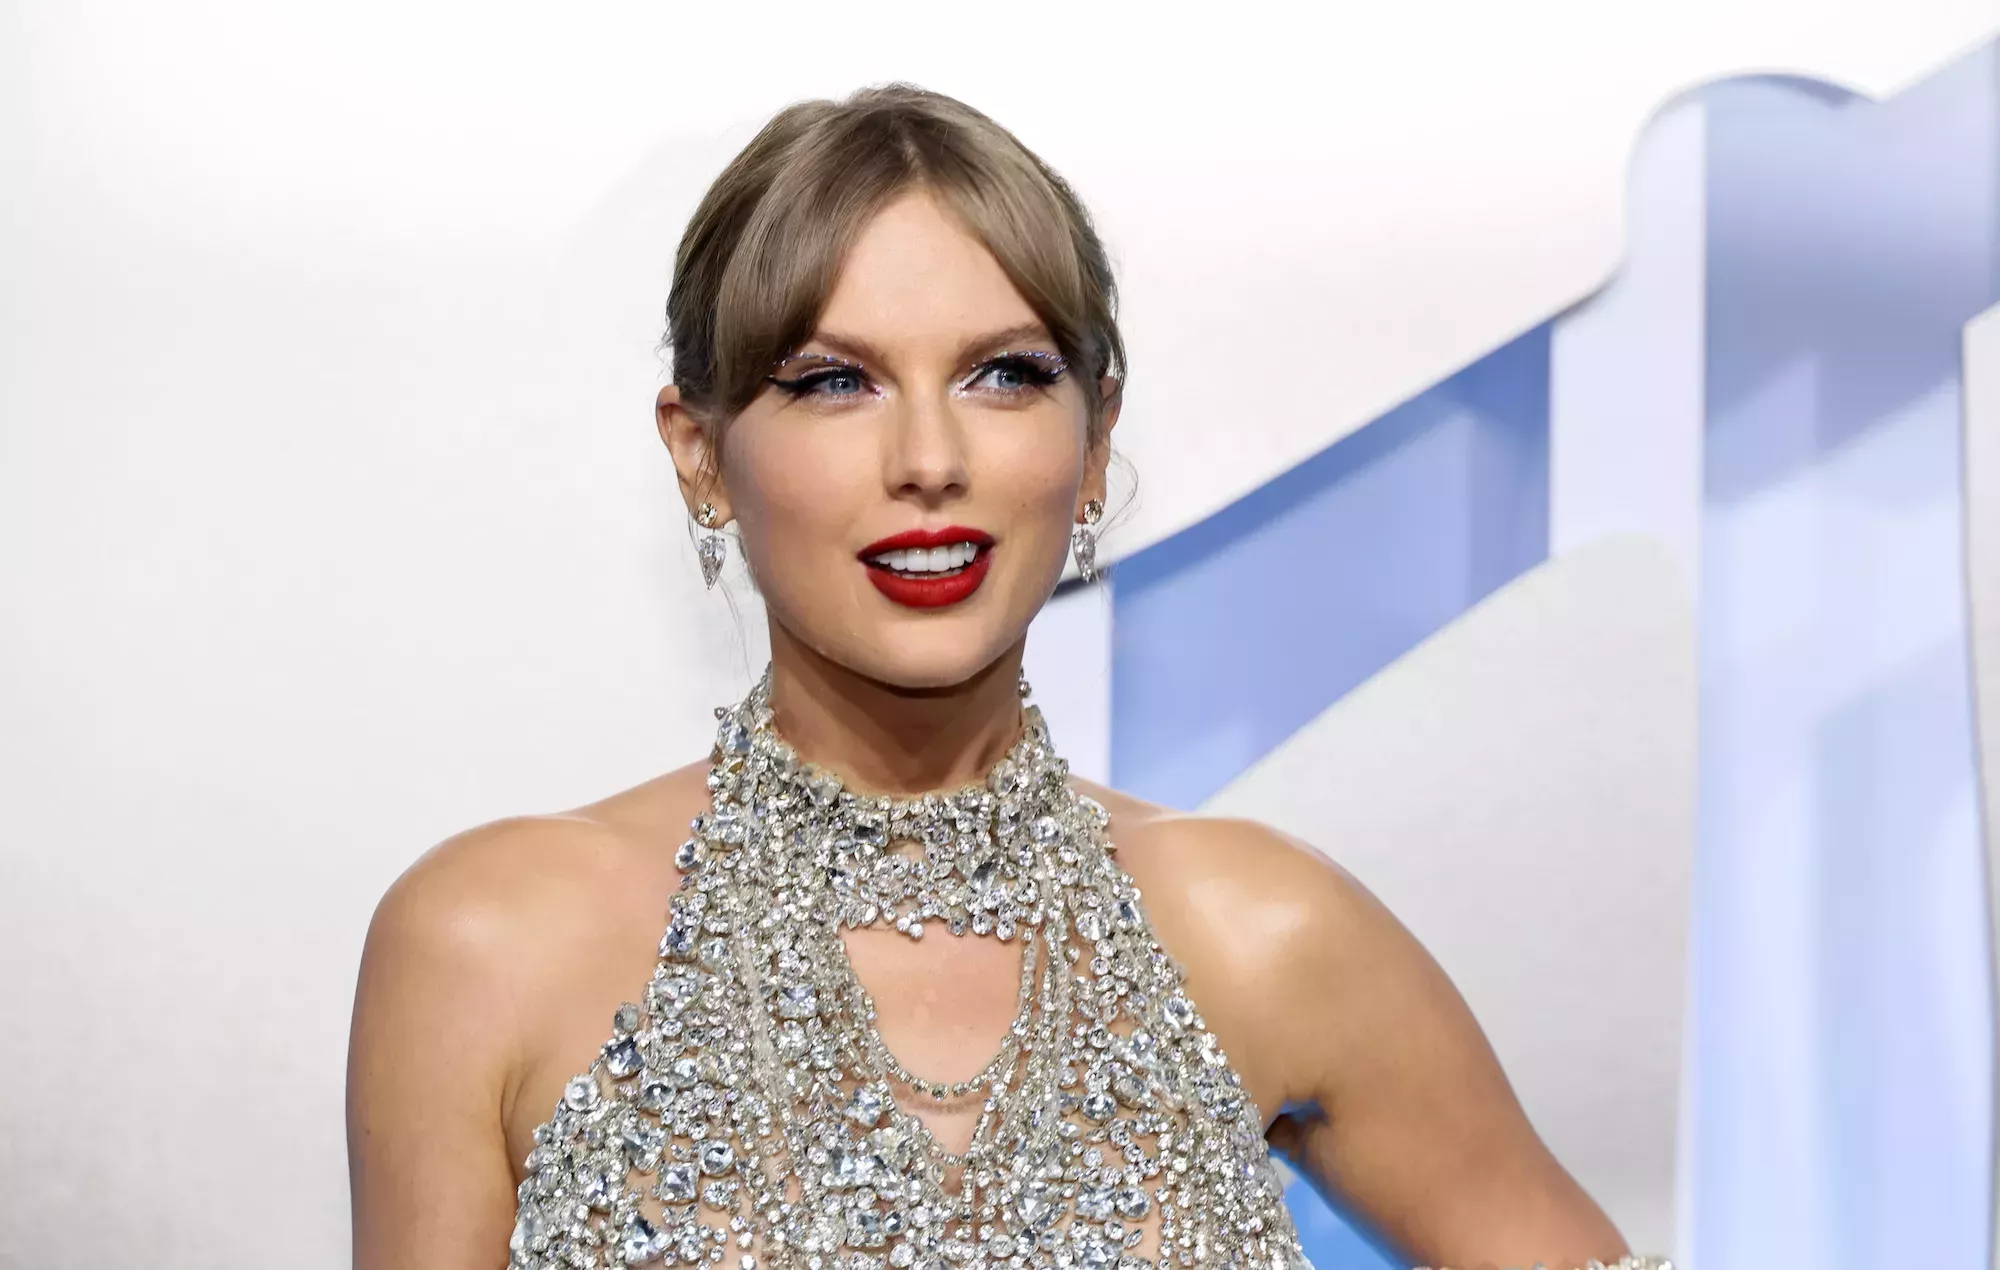 Los fans de Taylor Swift están convencidos de que 'Speak Now' será su próximo disco regrabado